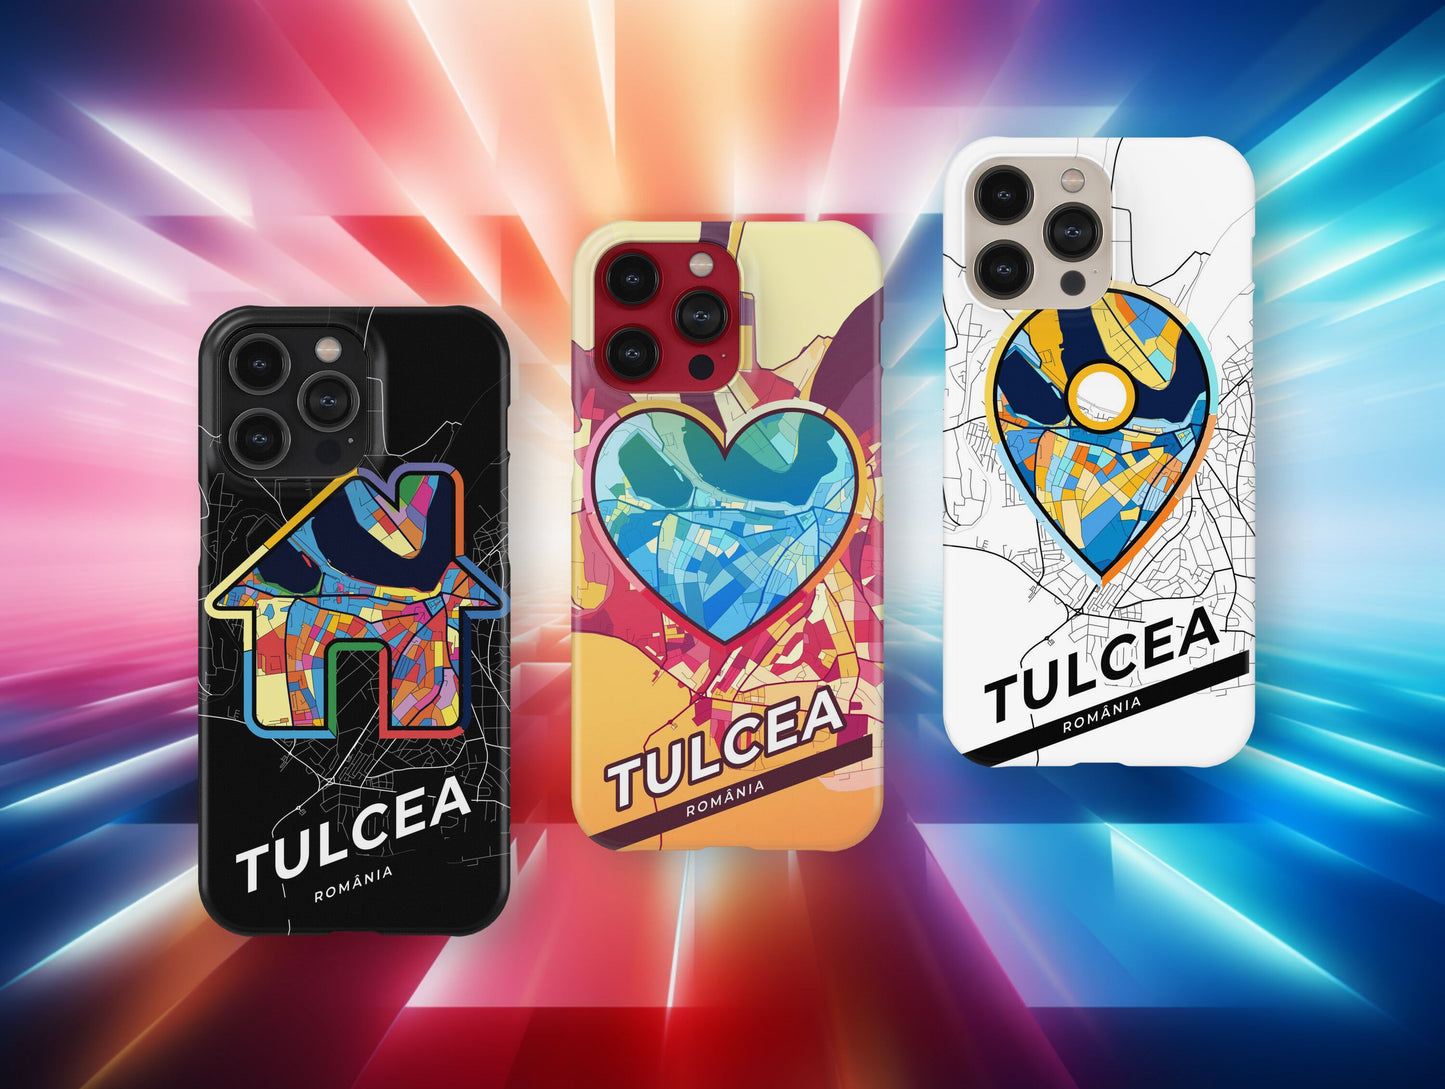 Tulcea Romania slim phone case with colorful icon